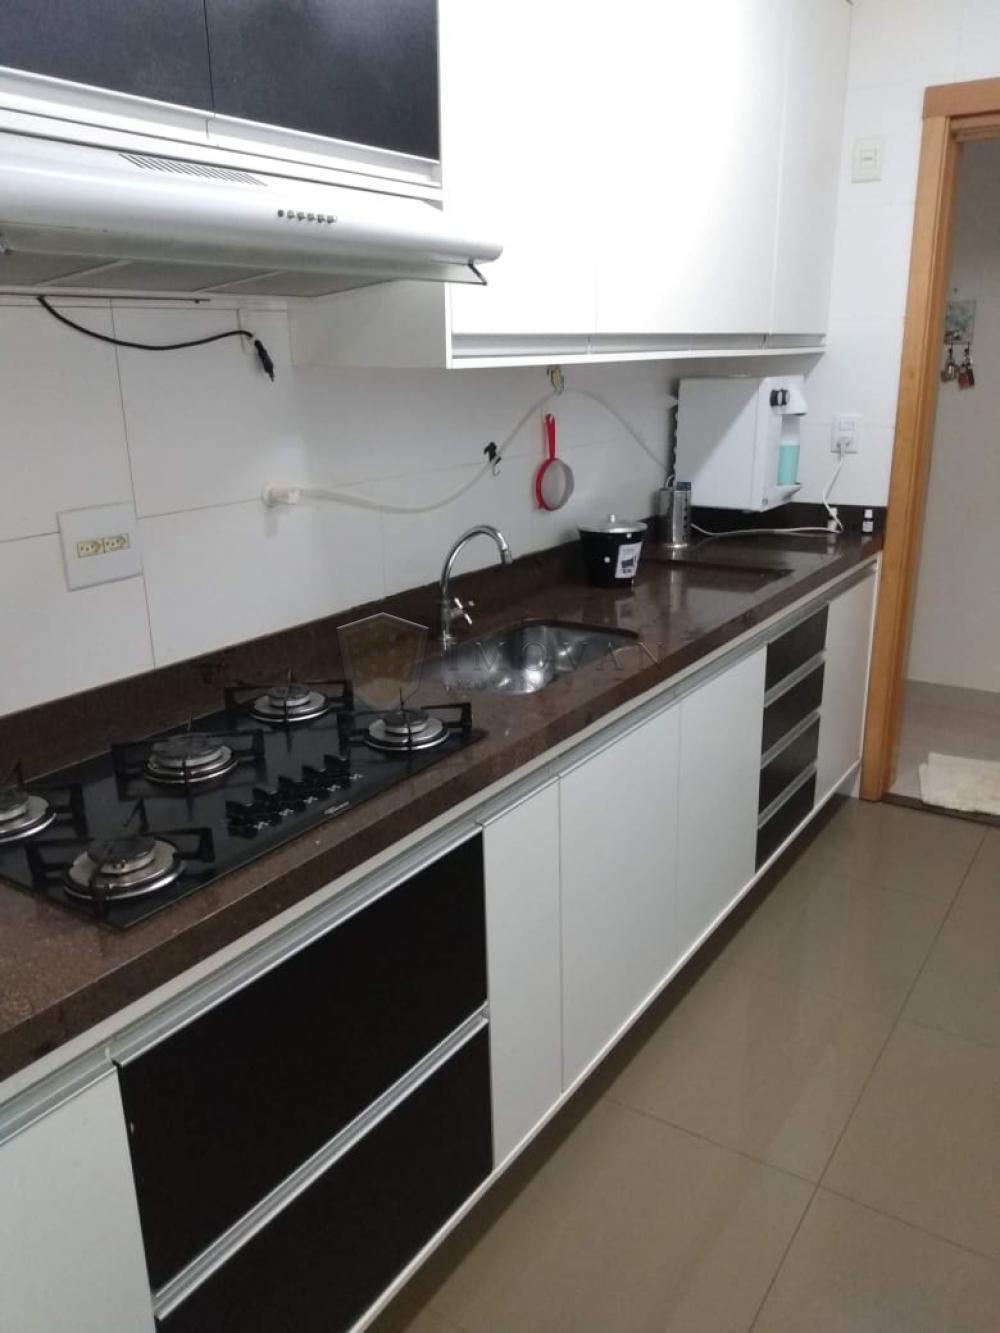 Comprar Apartamento / Padrão em Ribeirão Preto R$ 500.000,00 - Foto 18